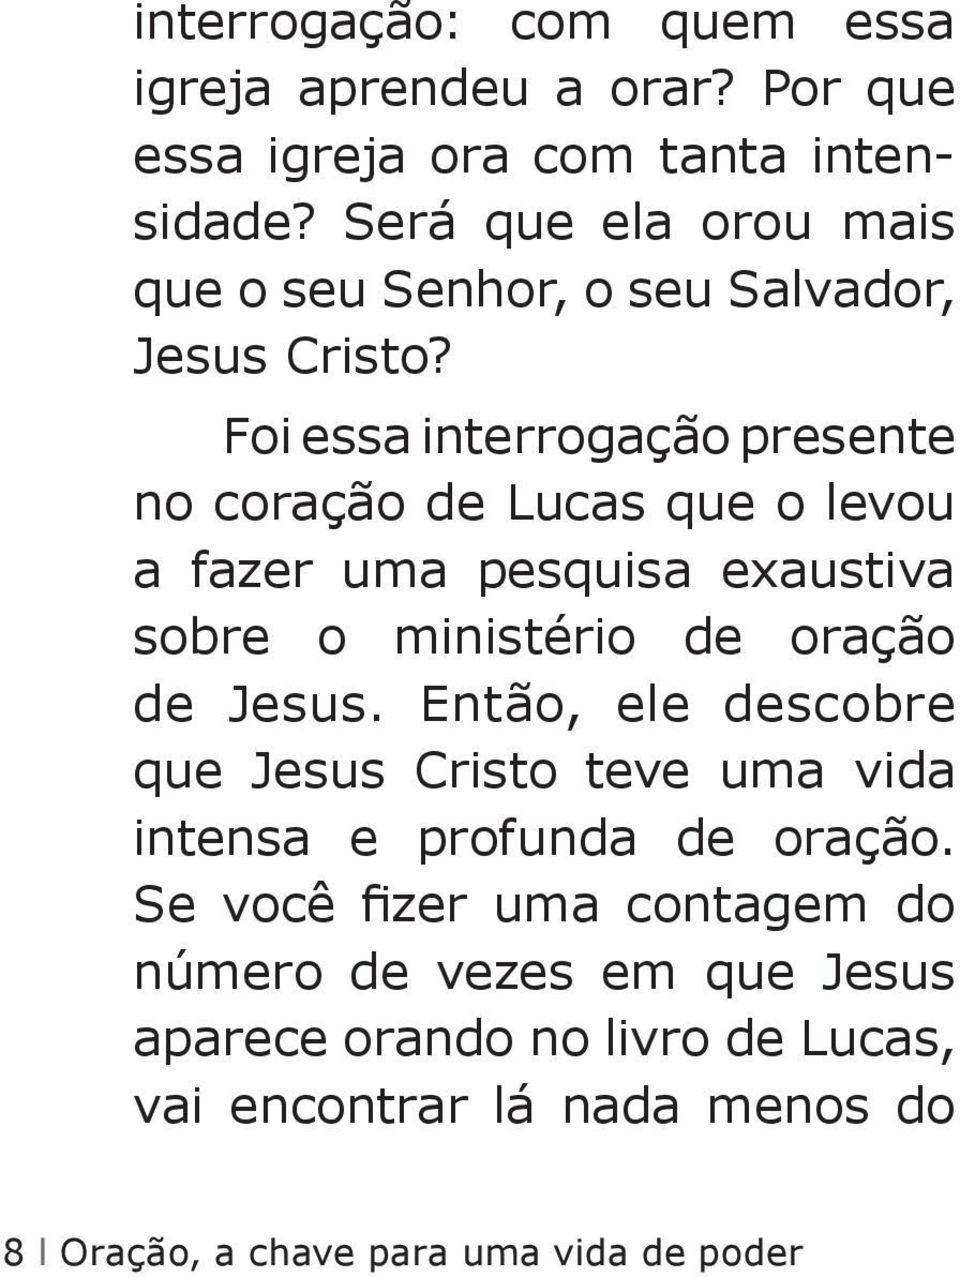 Foi essa interrogação presente no coração de Lucas que o levou a fazer uma pesquisa exaustiva sobre o ministério de oração de Jesus.